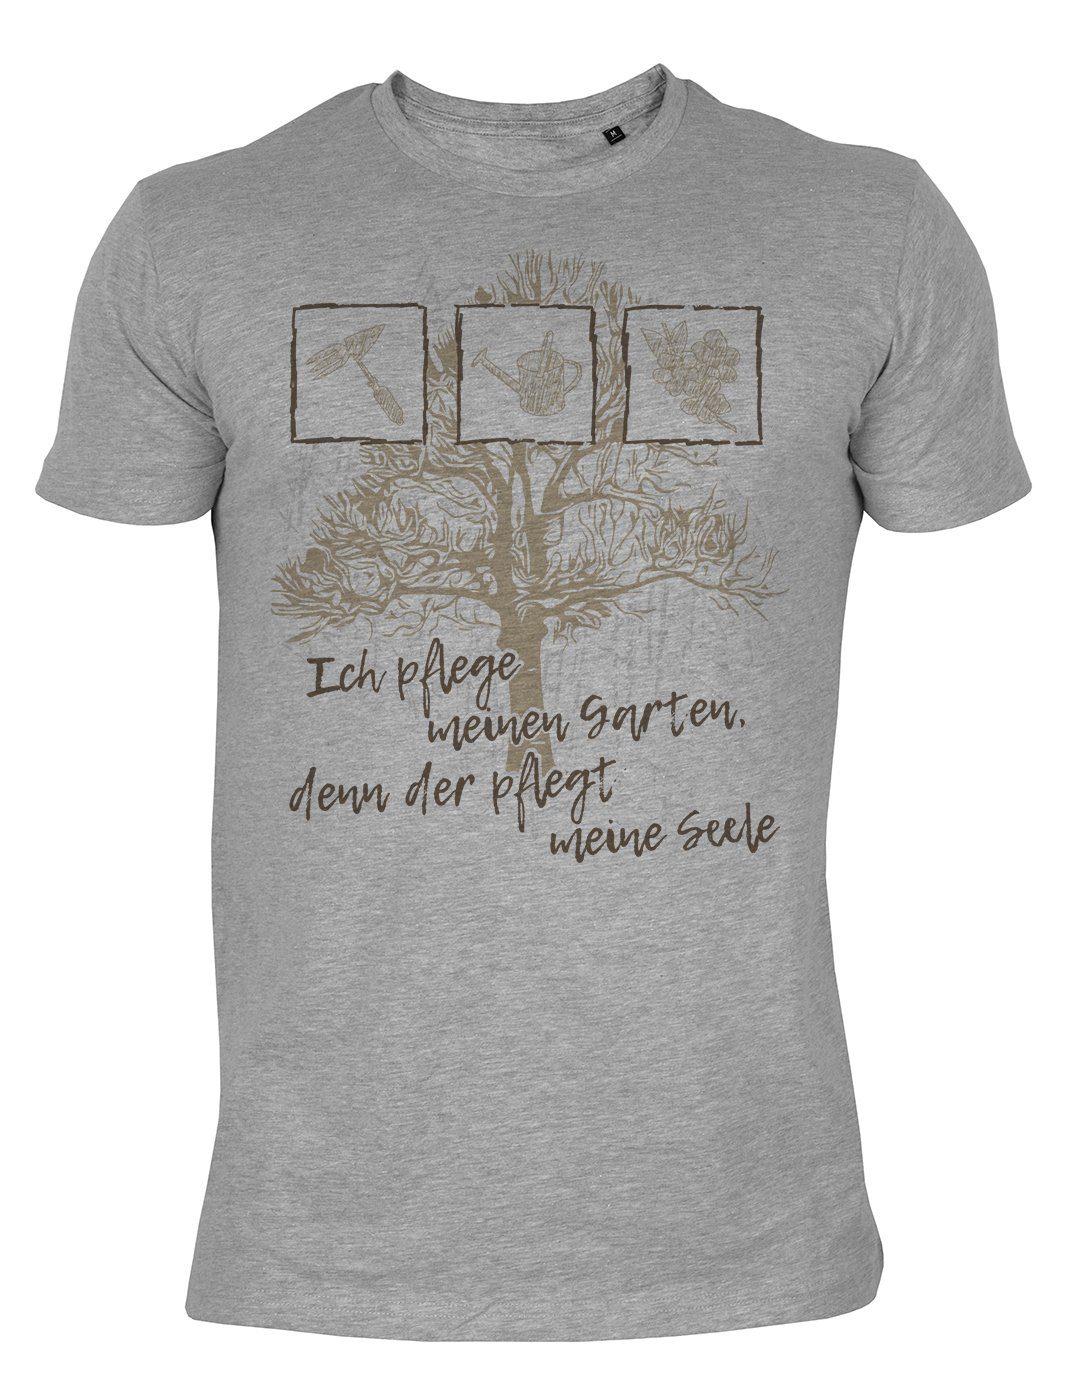 Tini - Shirts T-Shirt Gärtner Tshirt Hobbygärtner Gärtner Sprüche T-Shirt :  Ich pflege meinen Garten, denn der pflegt meine Seele